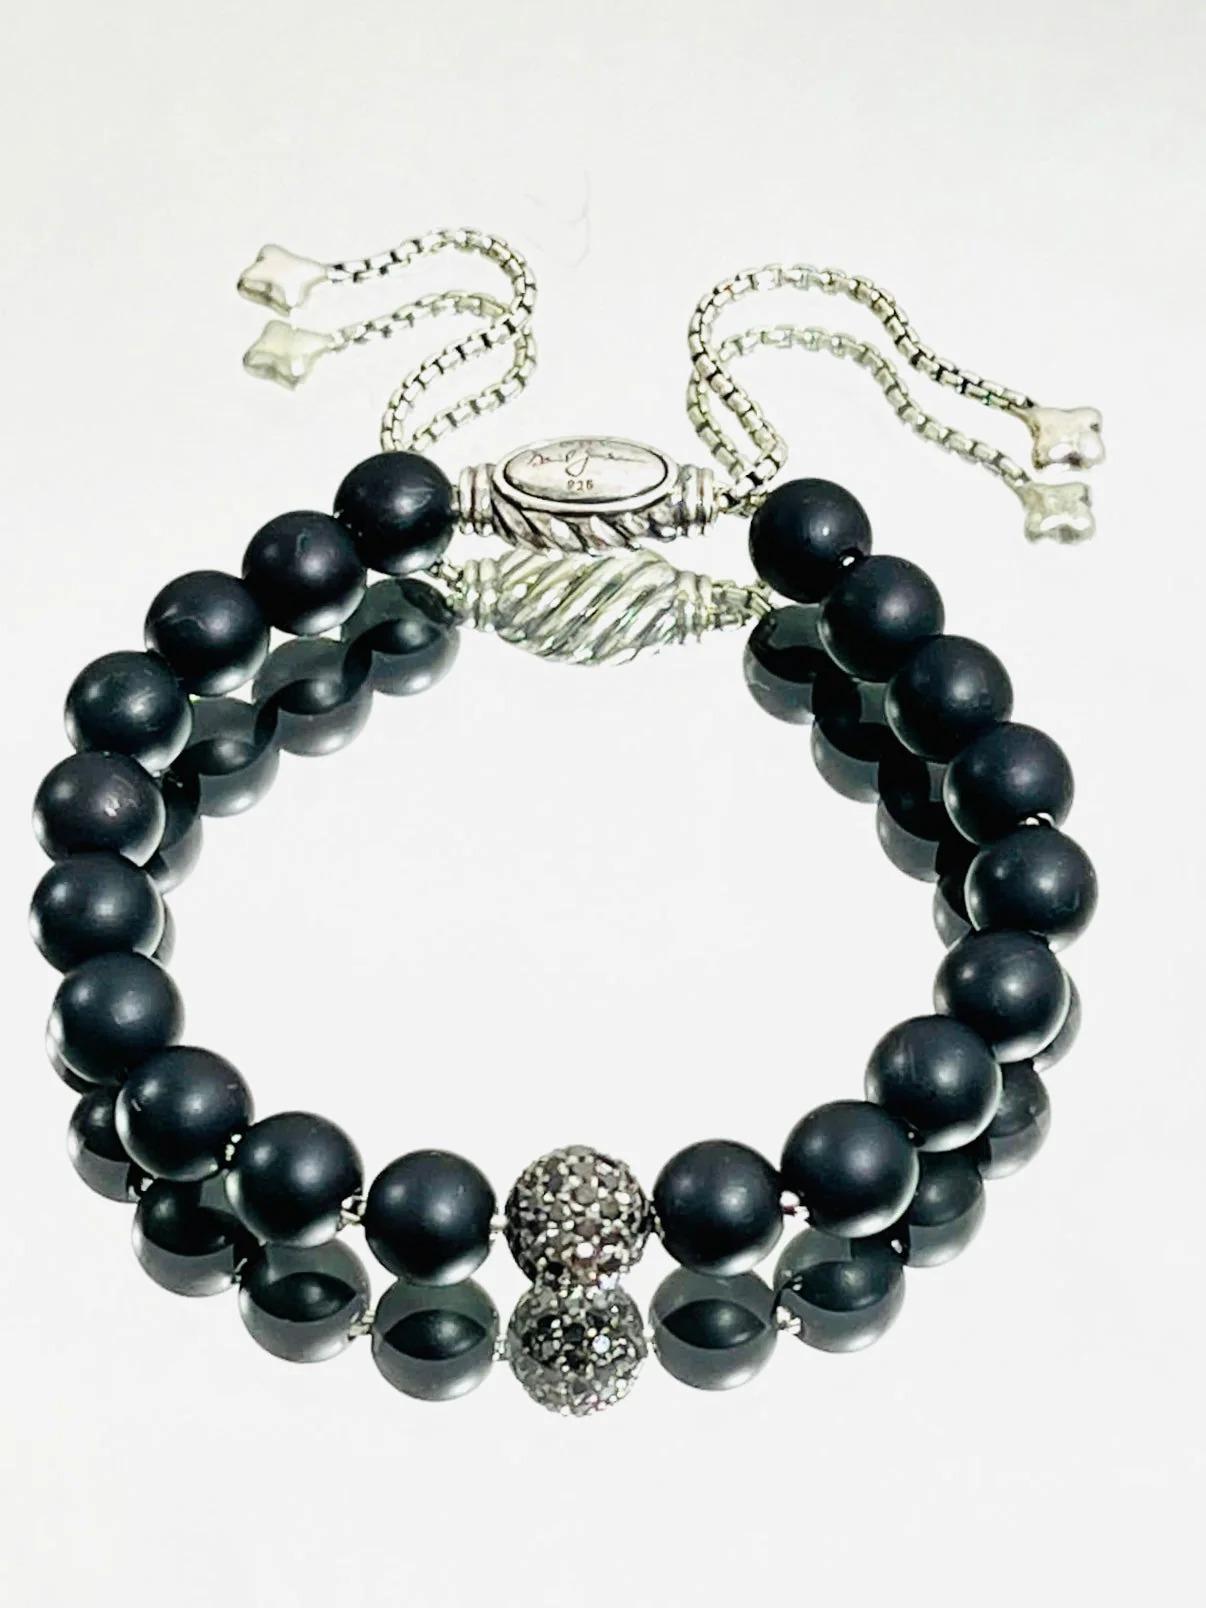 David Yurman Onyx & Diamond Beaded Bracelet

Perles d'onyx noir avec un diamant noir pavé de 0,63 carat, fermeture en argent sterling et chaînes pendantes. Bracelet spirituel.

Informations complémentaires :
Taille - Unique
Composition - Diamant,